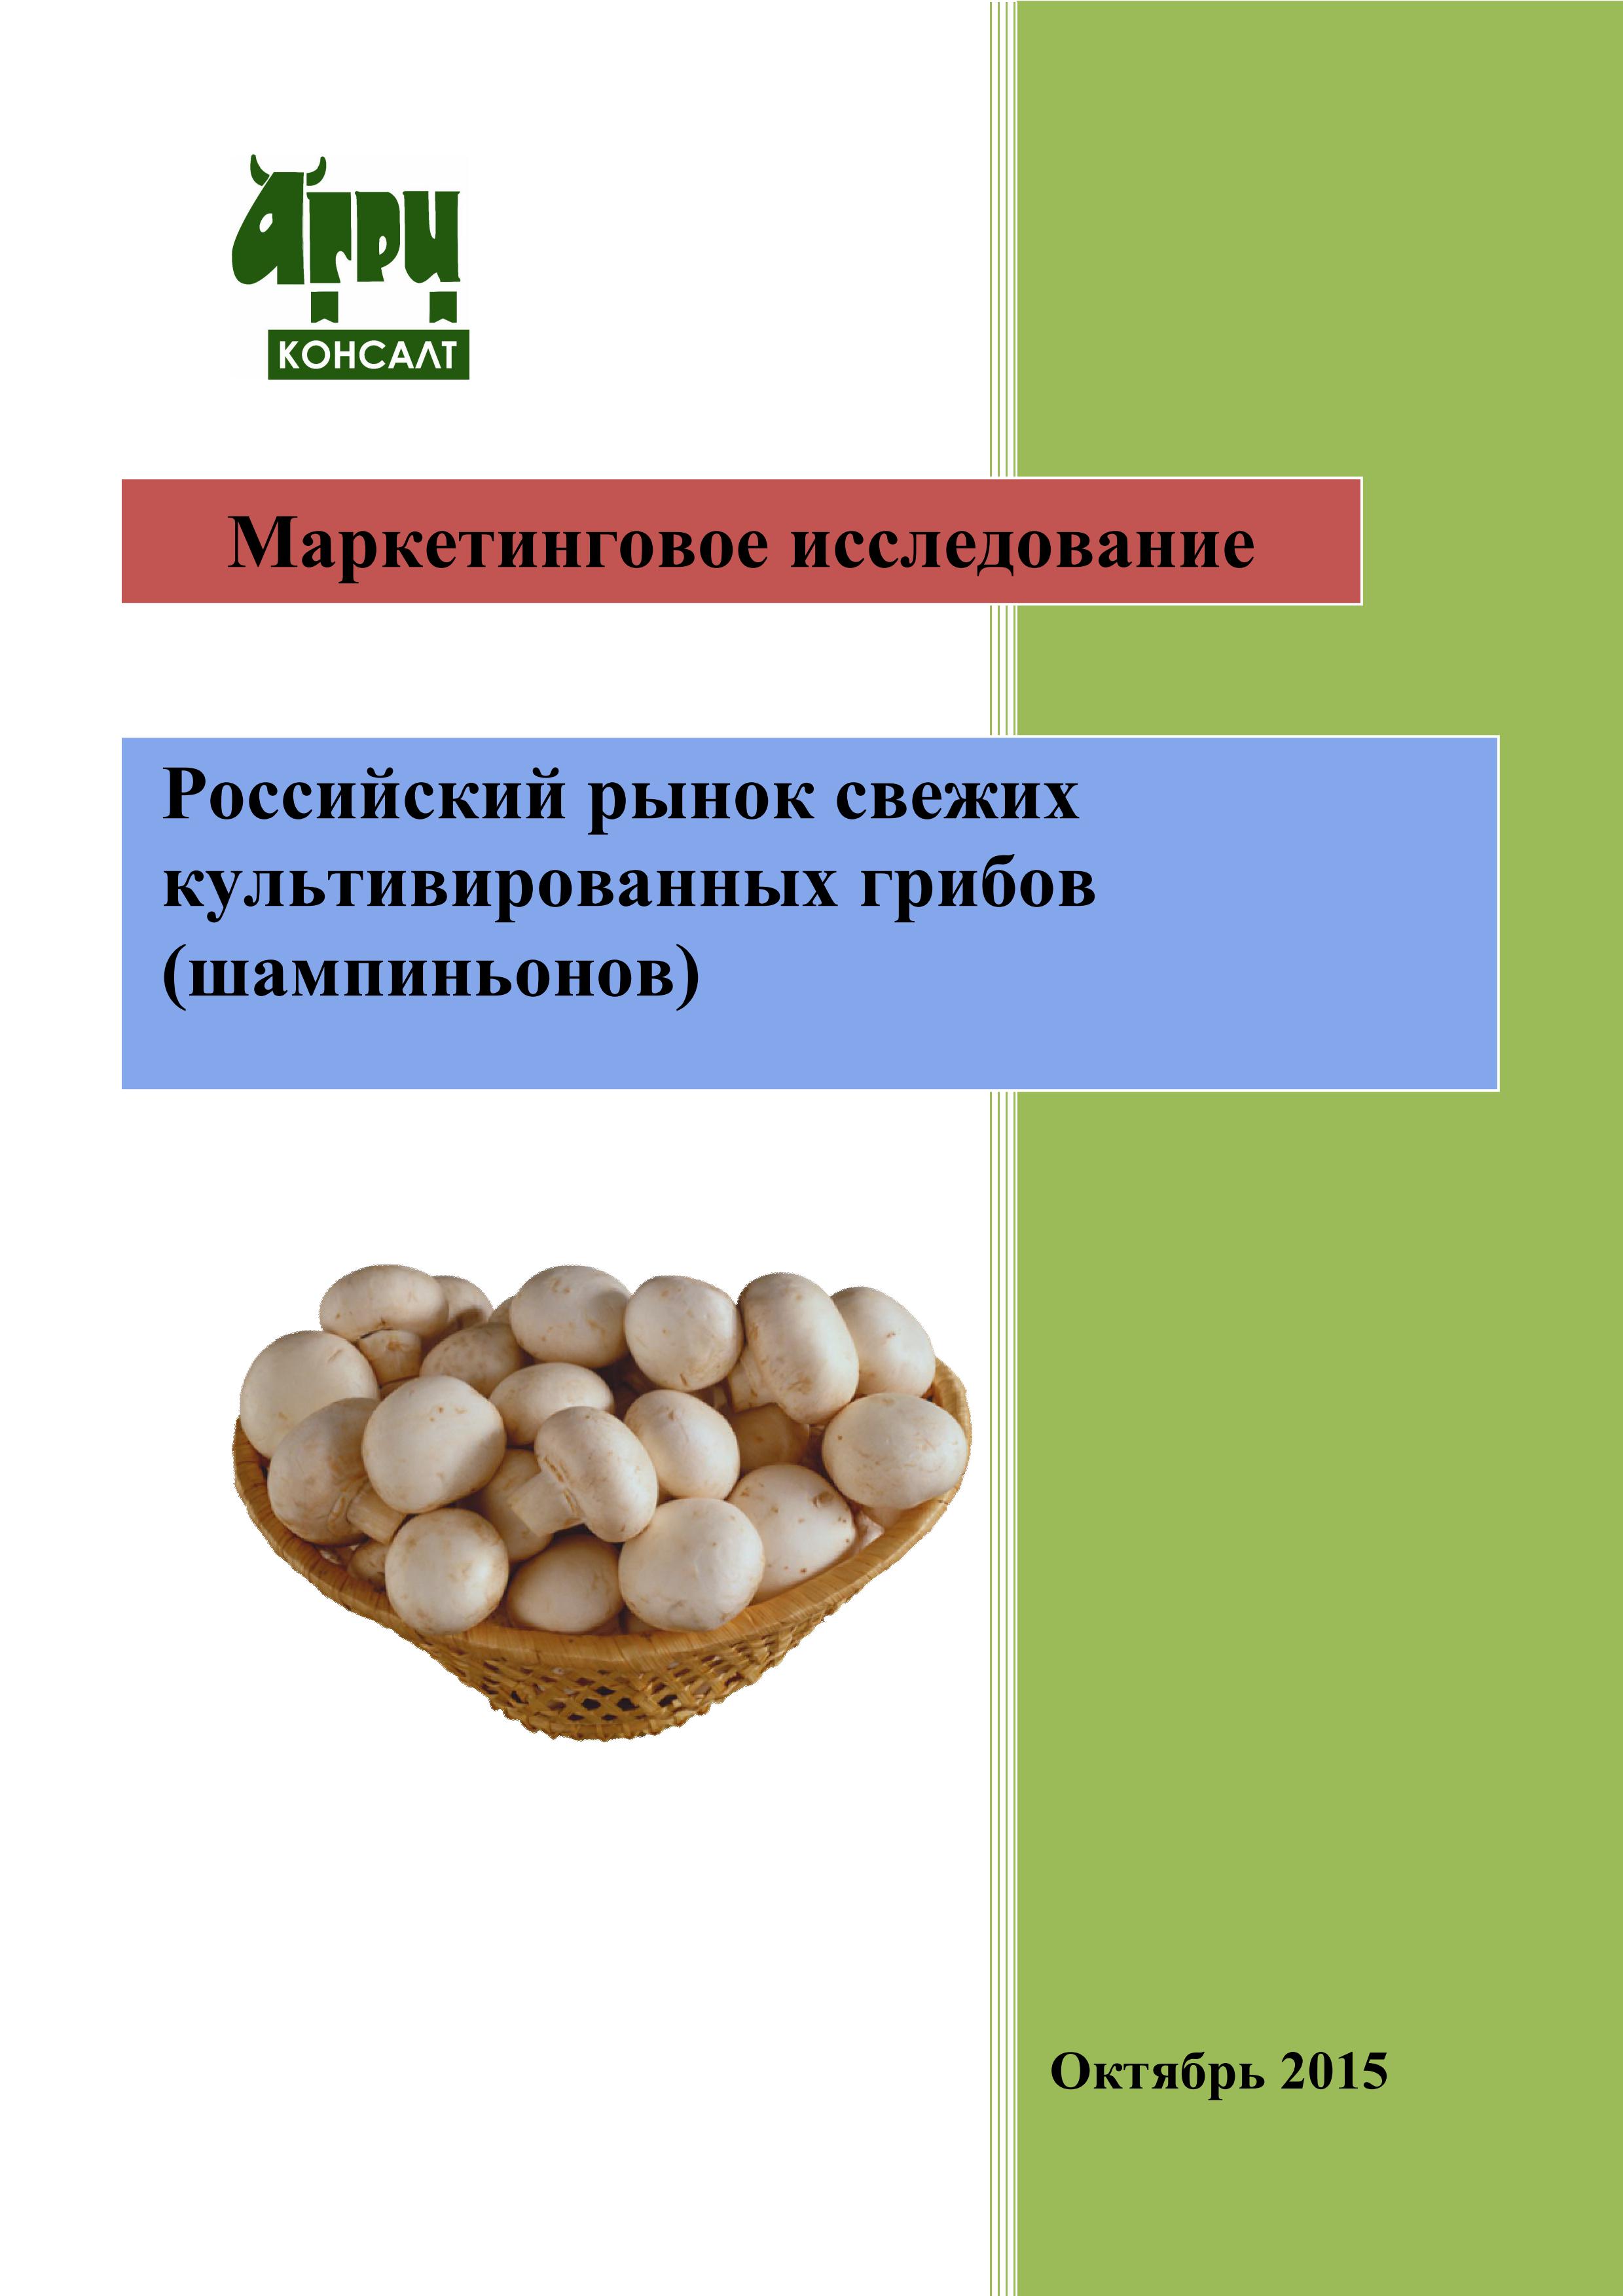 Культивируемые грибы и условия выращивания